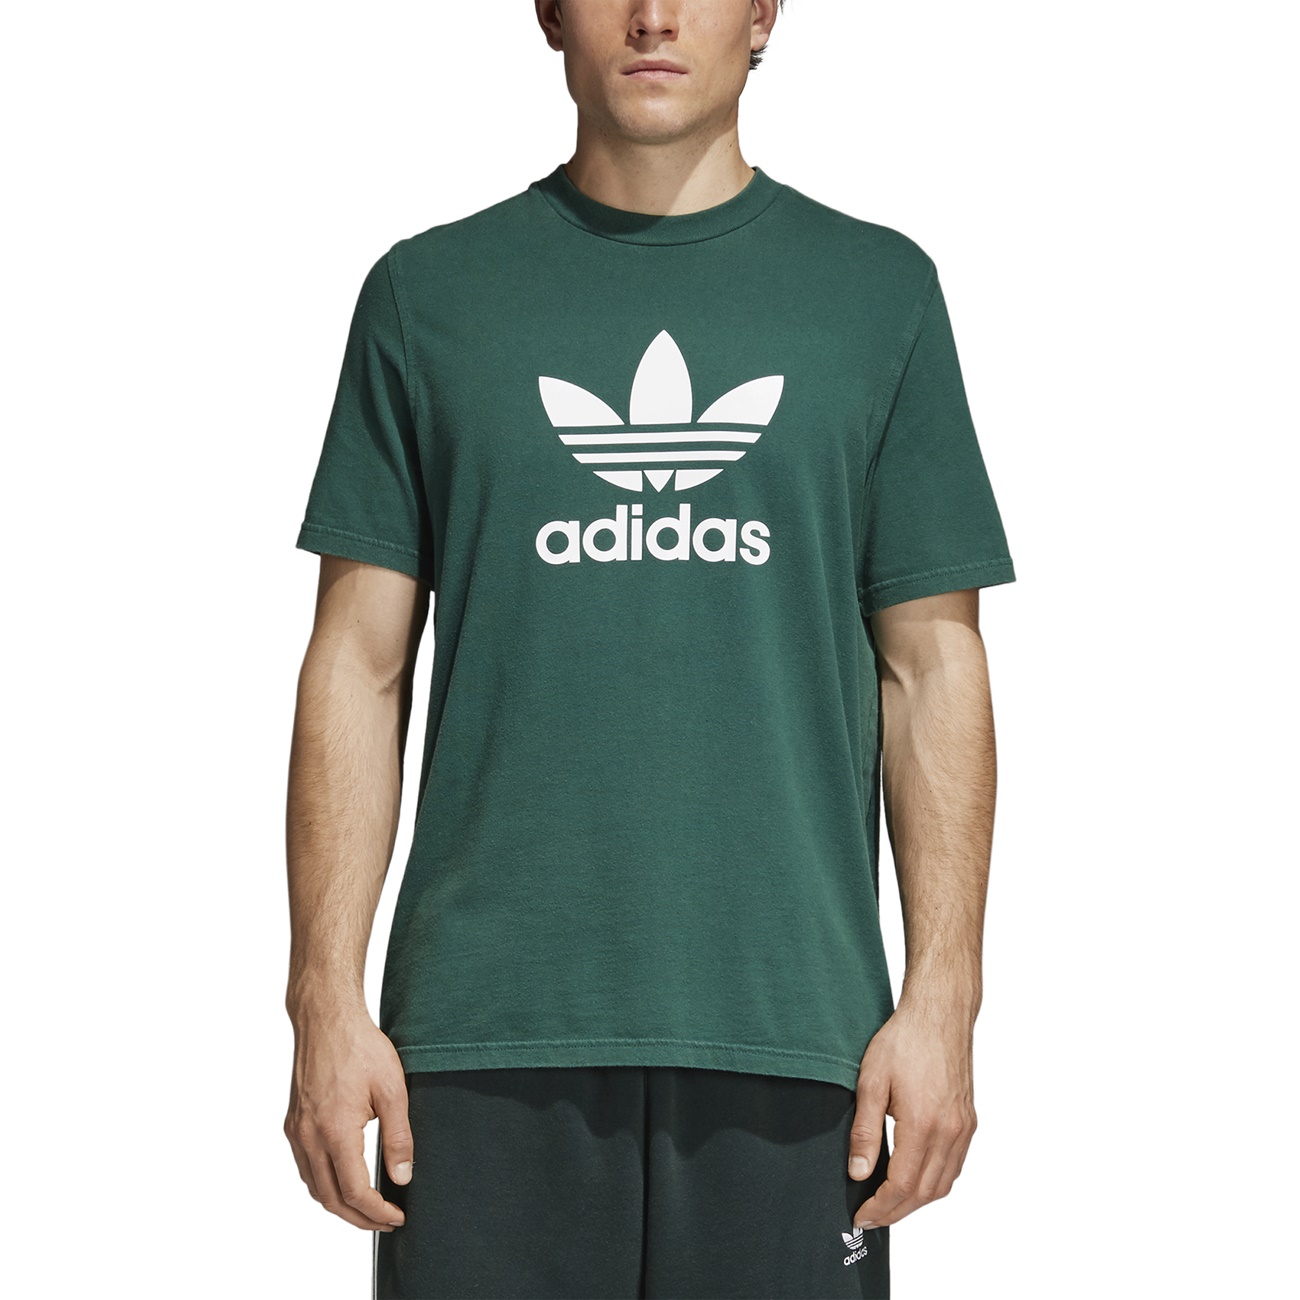  Adidas  Originals Trefoil T Shirt  Green  manelsanchez com